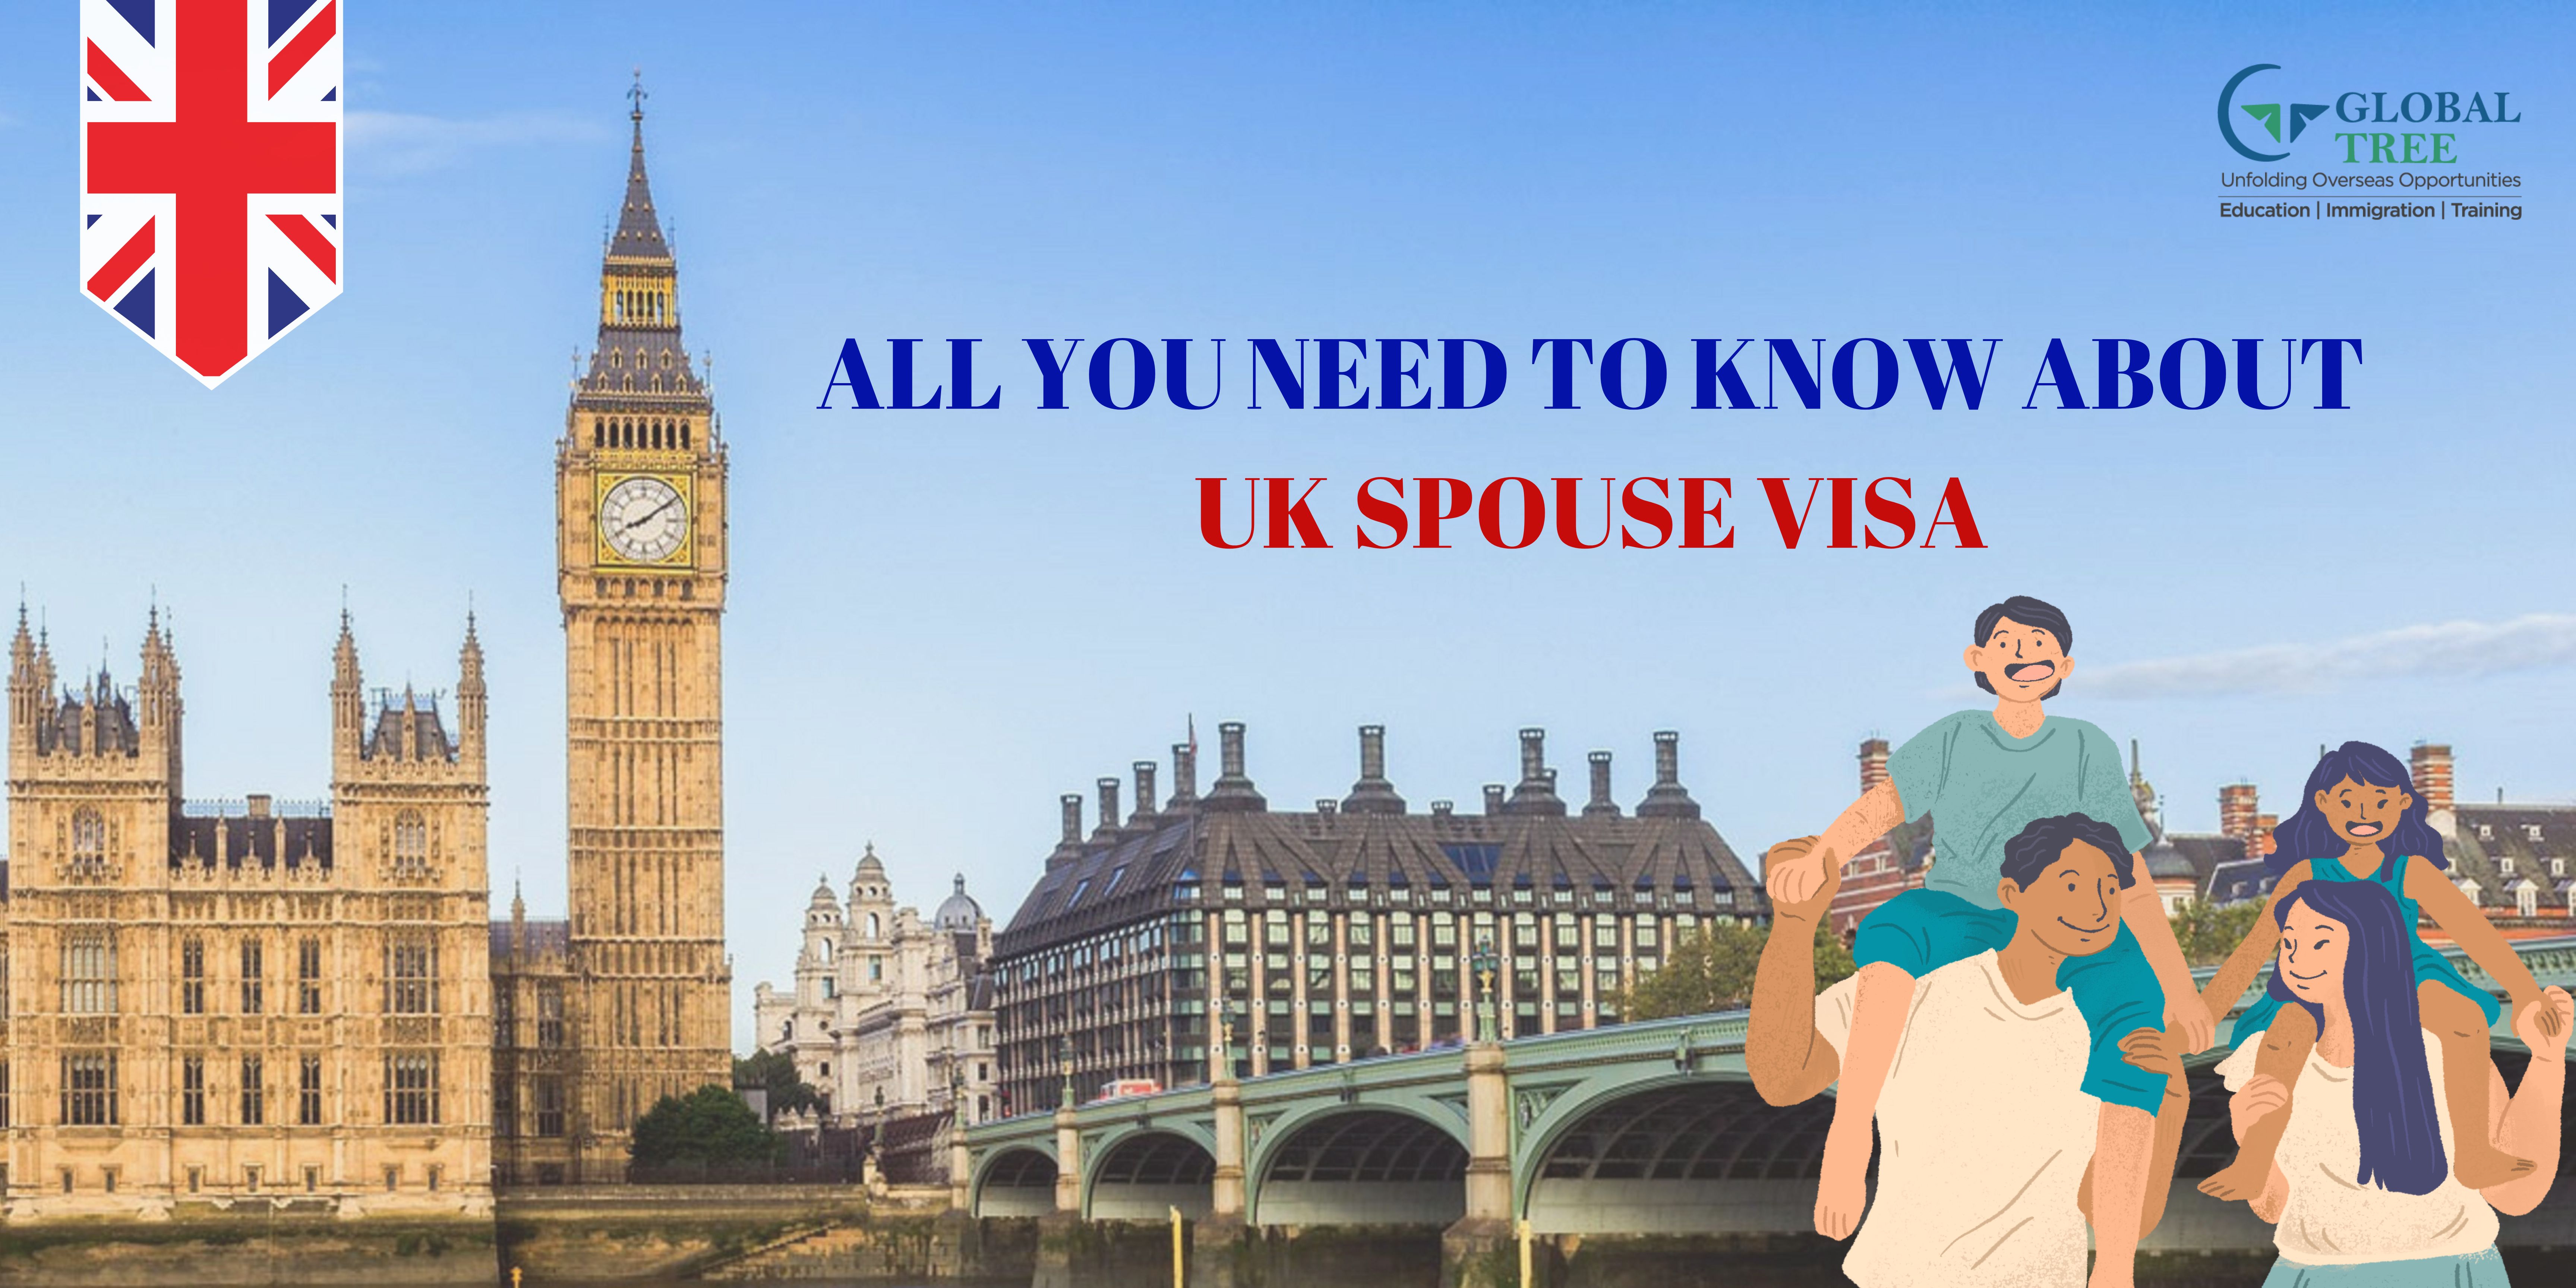 uk spouse visa travel to europe